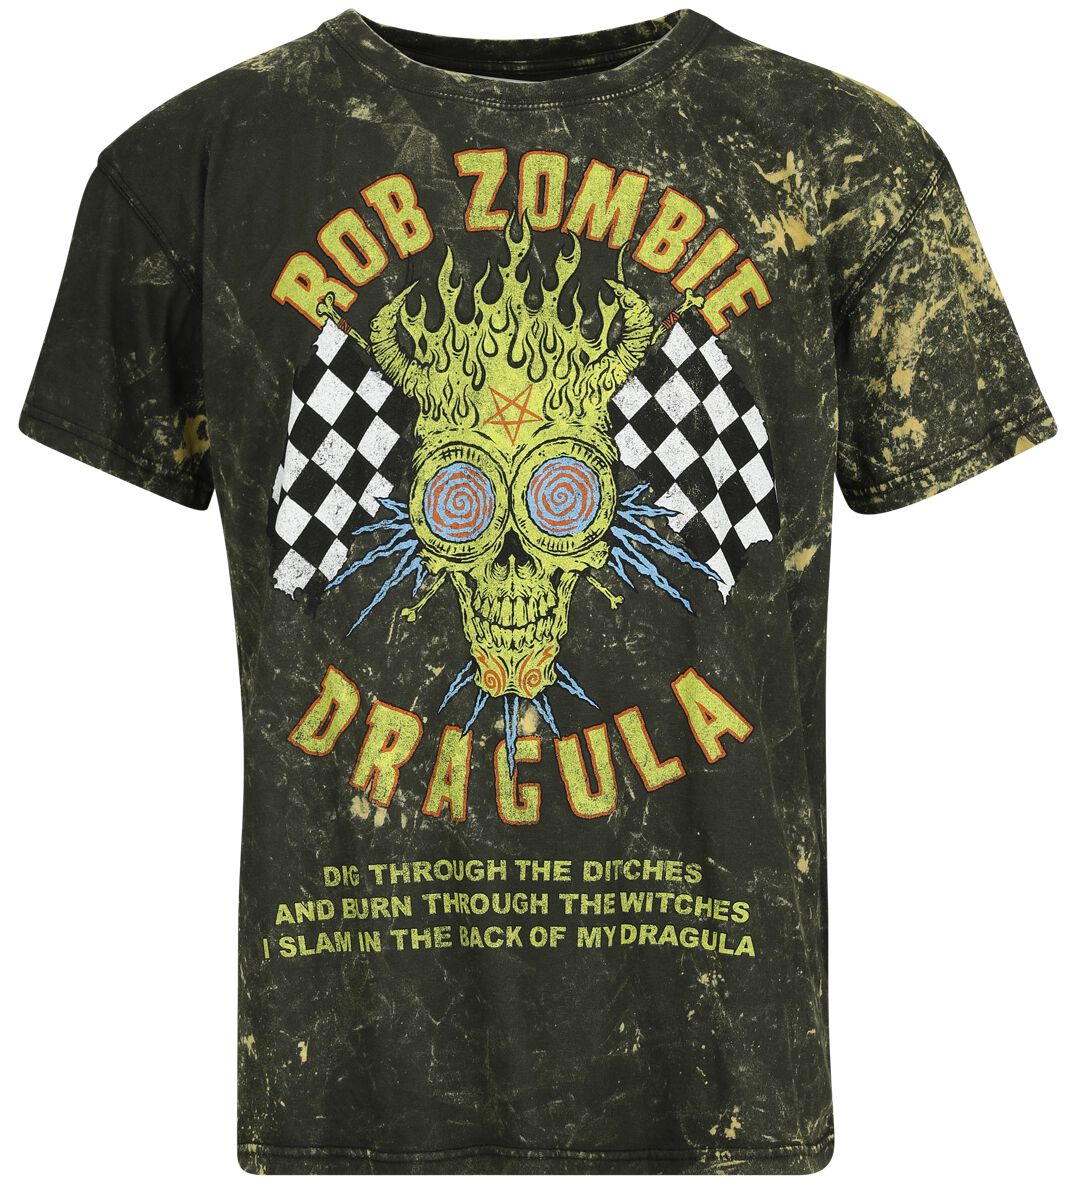 Rob Zombie T-Shirt - Dragula Racing - S bis 4XL - für Männer - Größe 4XL - braun  - Lizenziertes Merchandise!